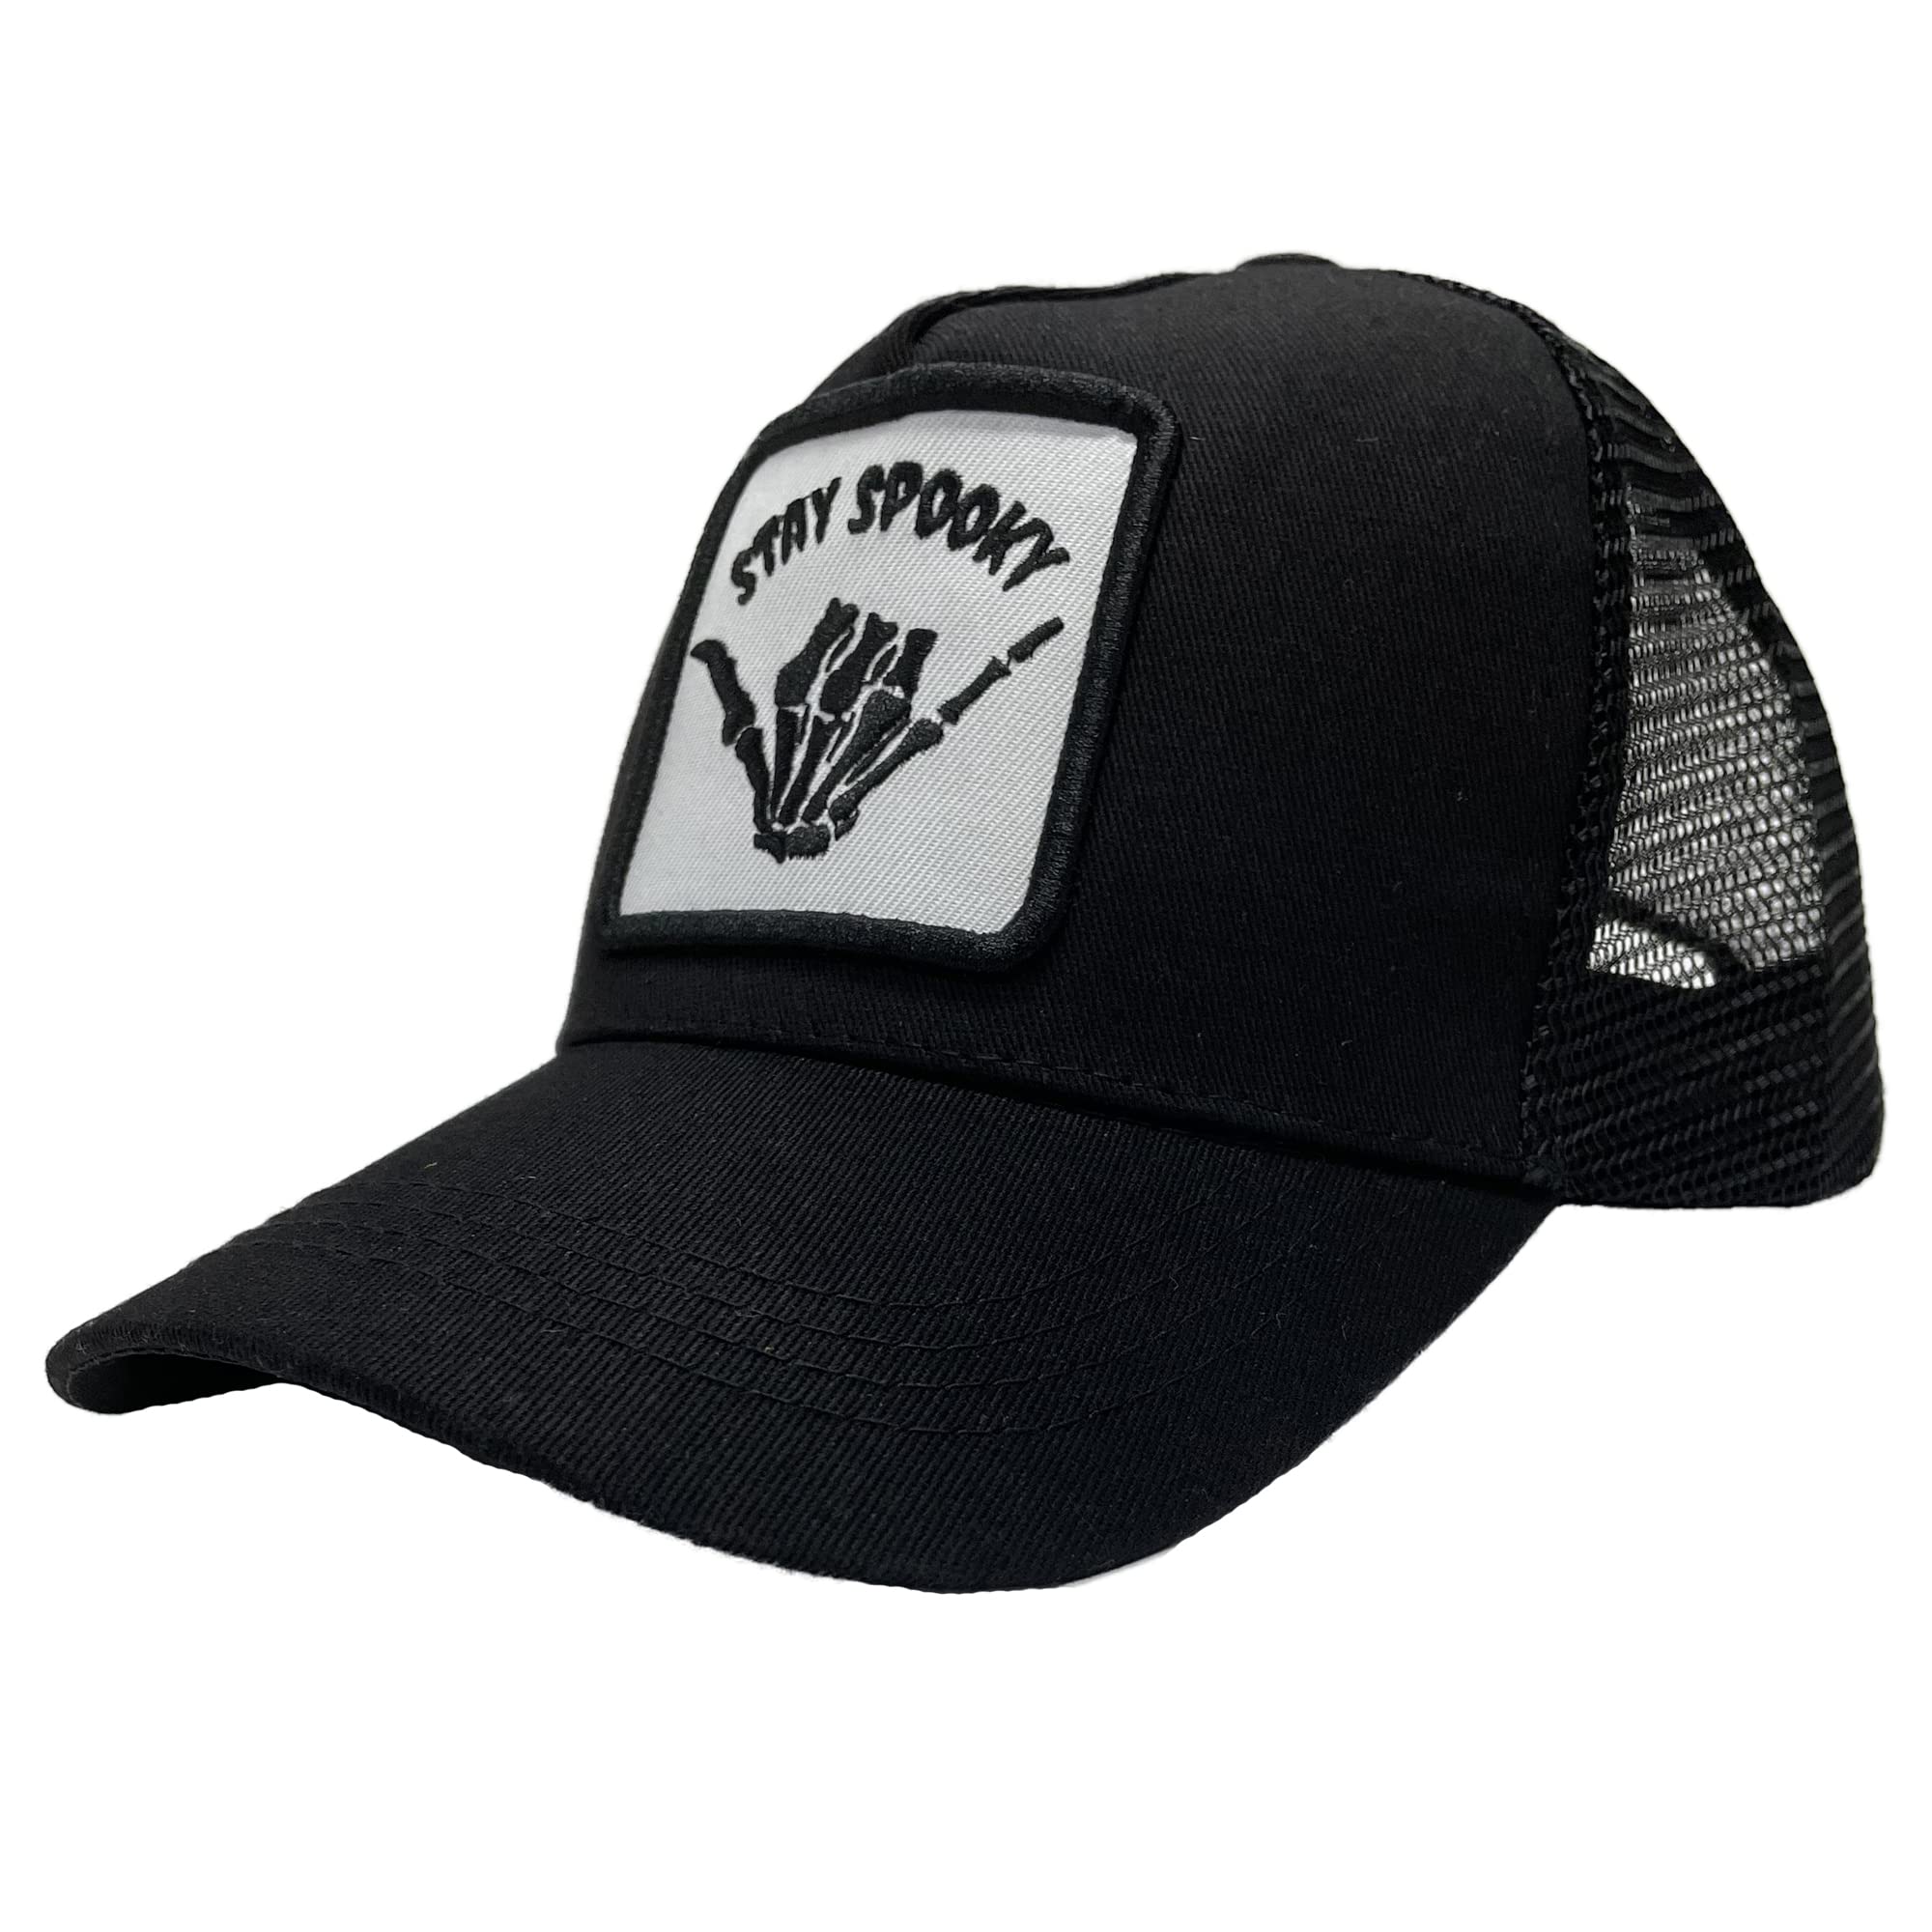 Mesh Trucker Hat Snapback Square Patch Baseball Caps - Skull Skeleton